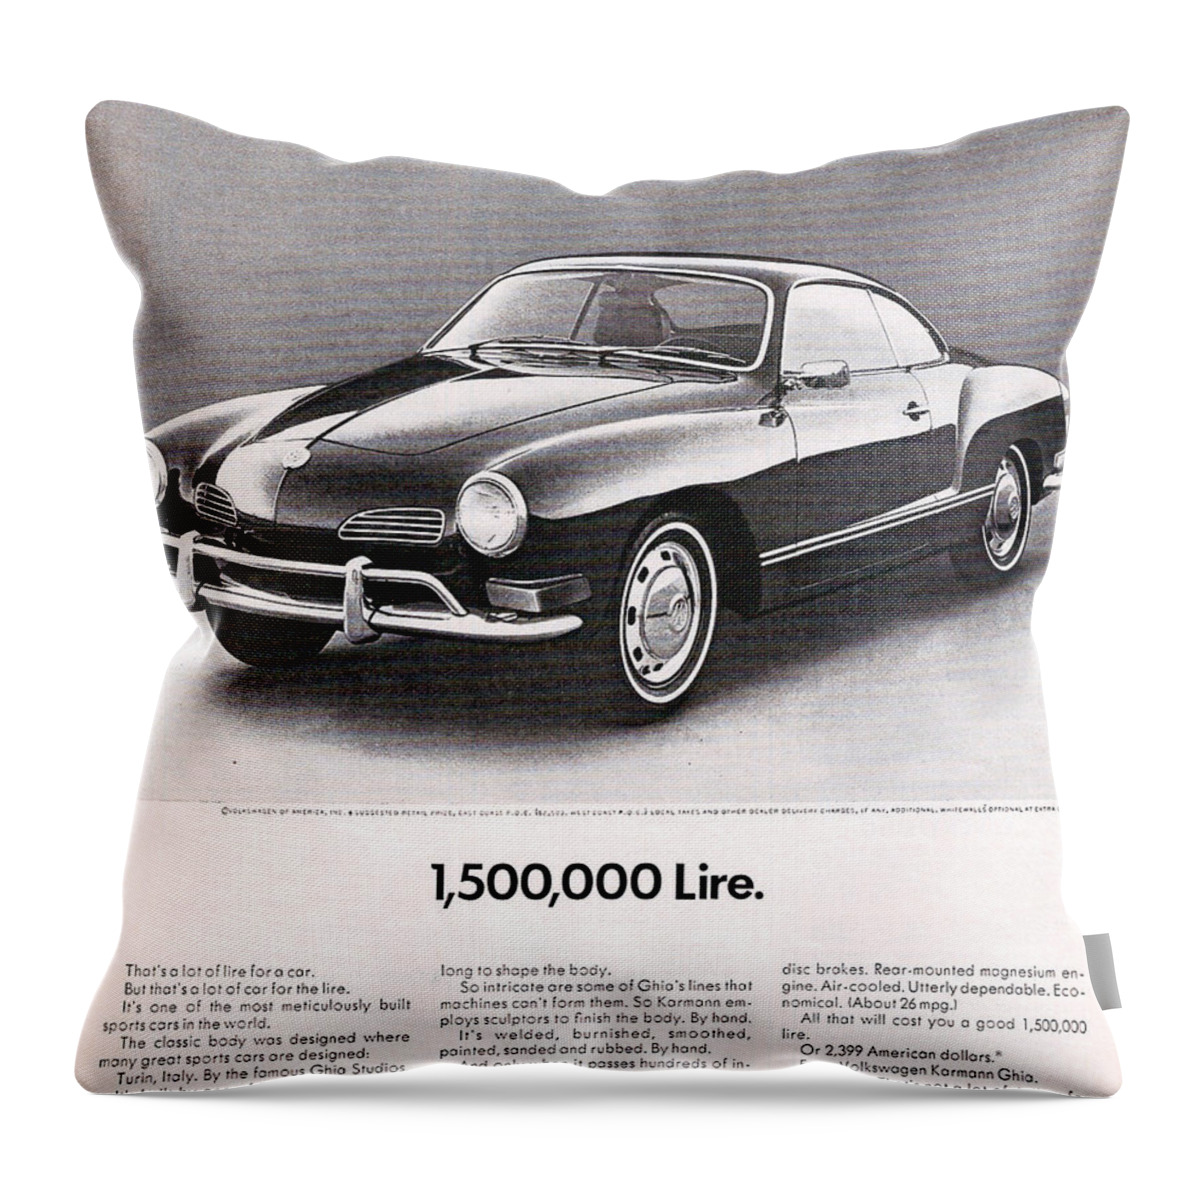 Karmann Ghia Throw Pillow featuring the digital art Vintage Karmann Ghia Advert by Georgia Clare